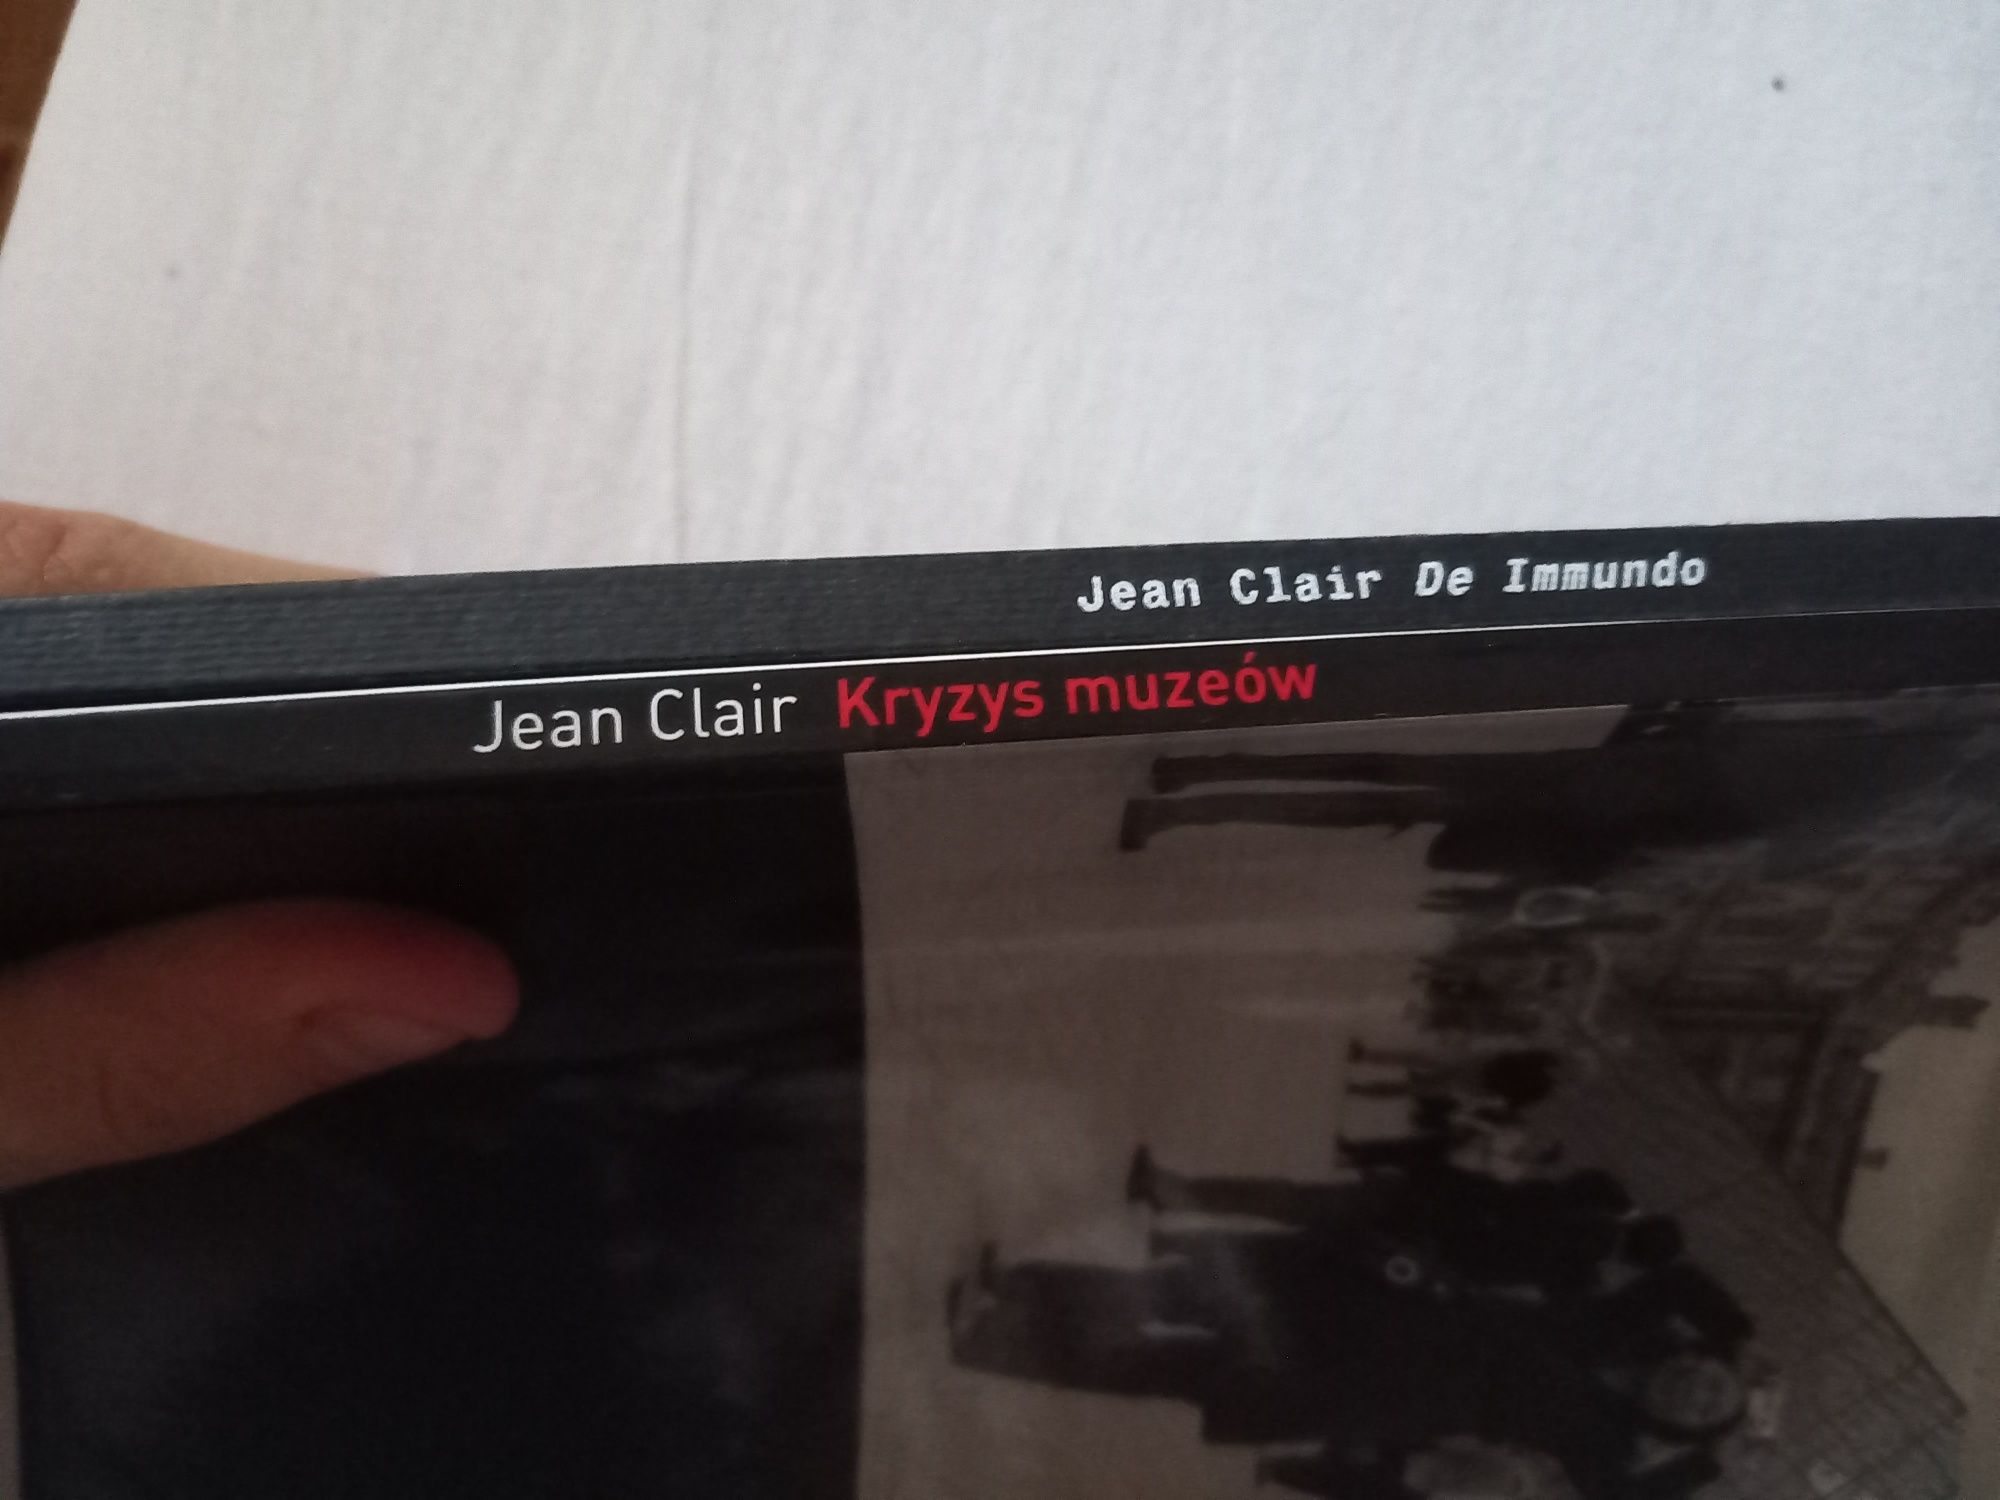 Jean Clair dwie książki kryzys muzeów, de immundo